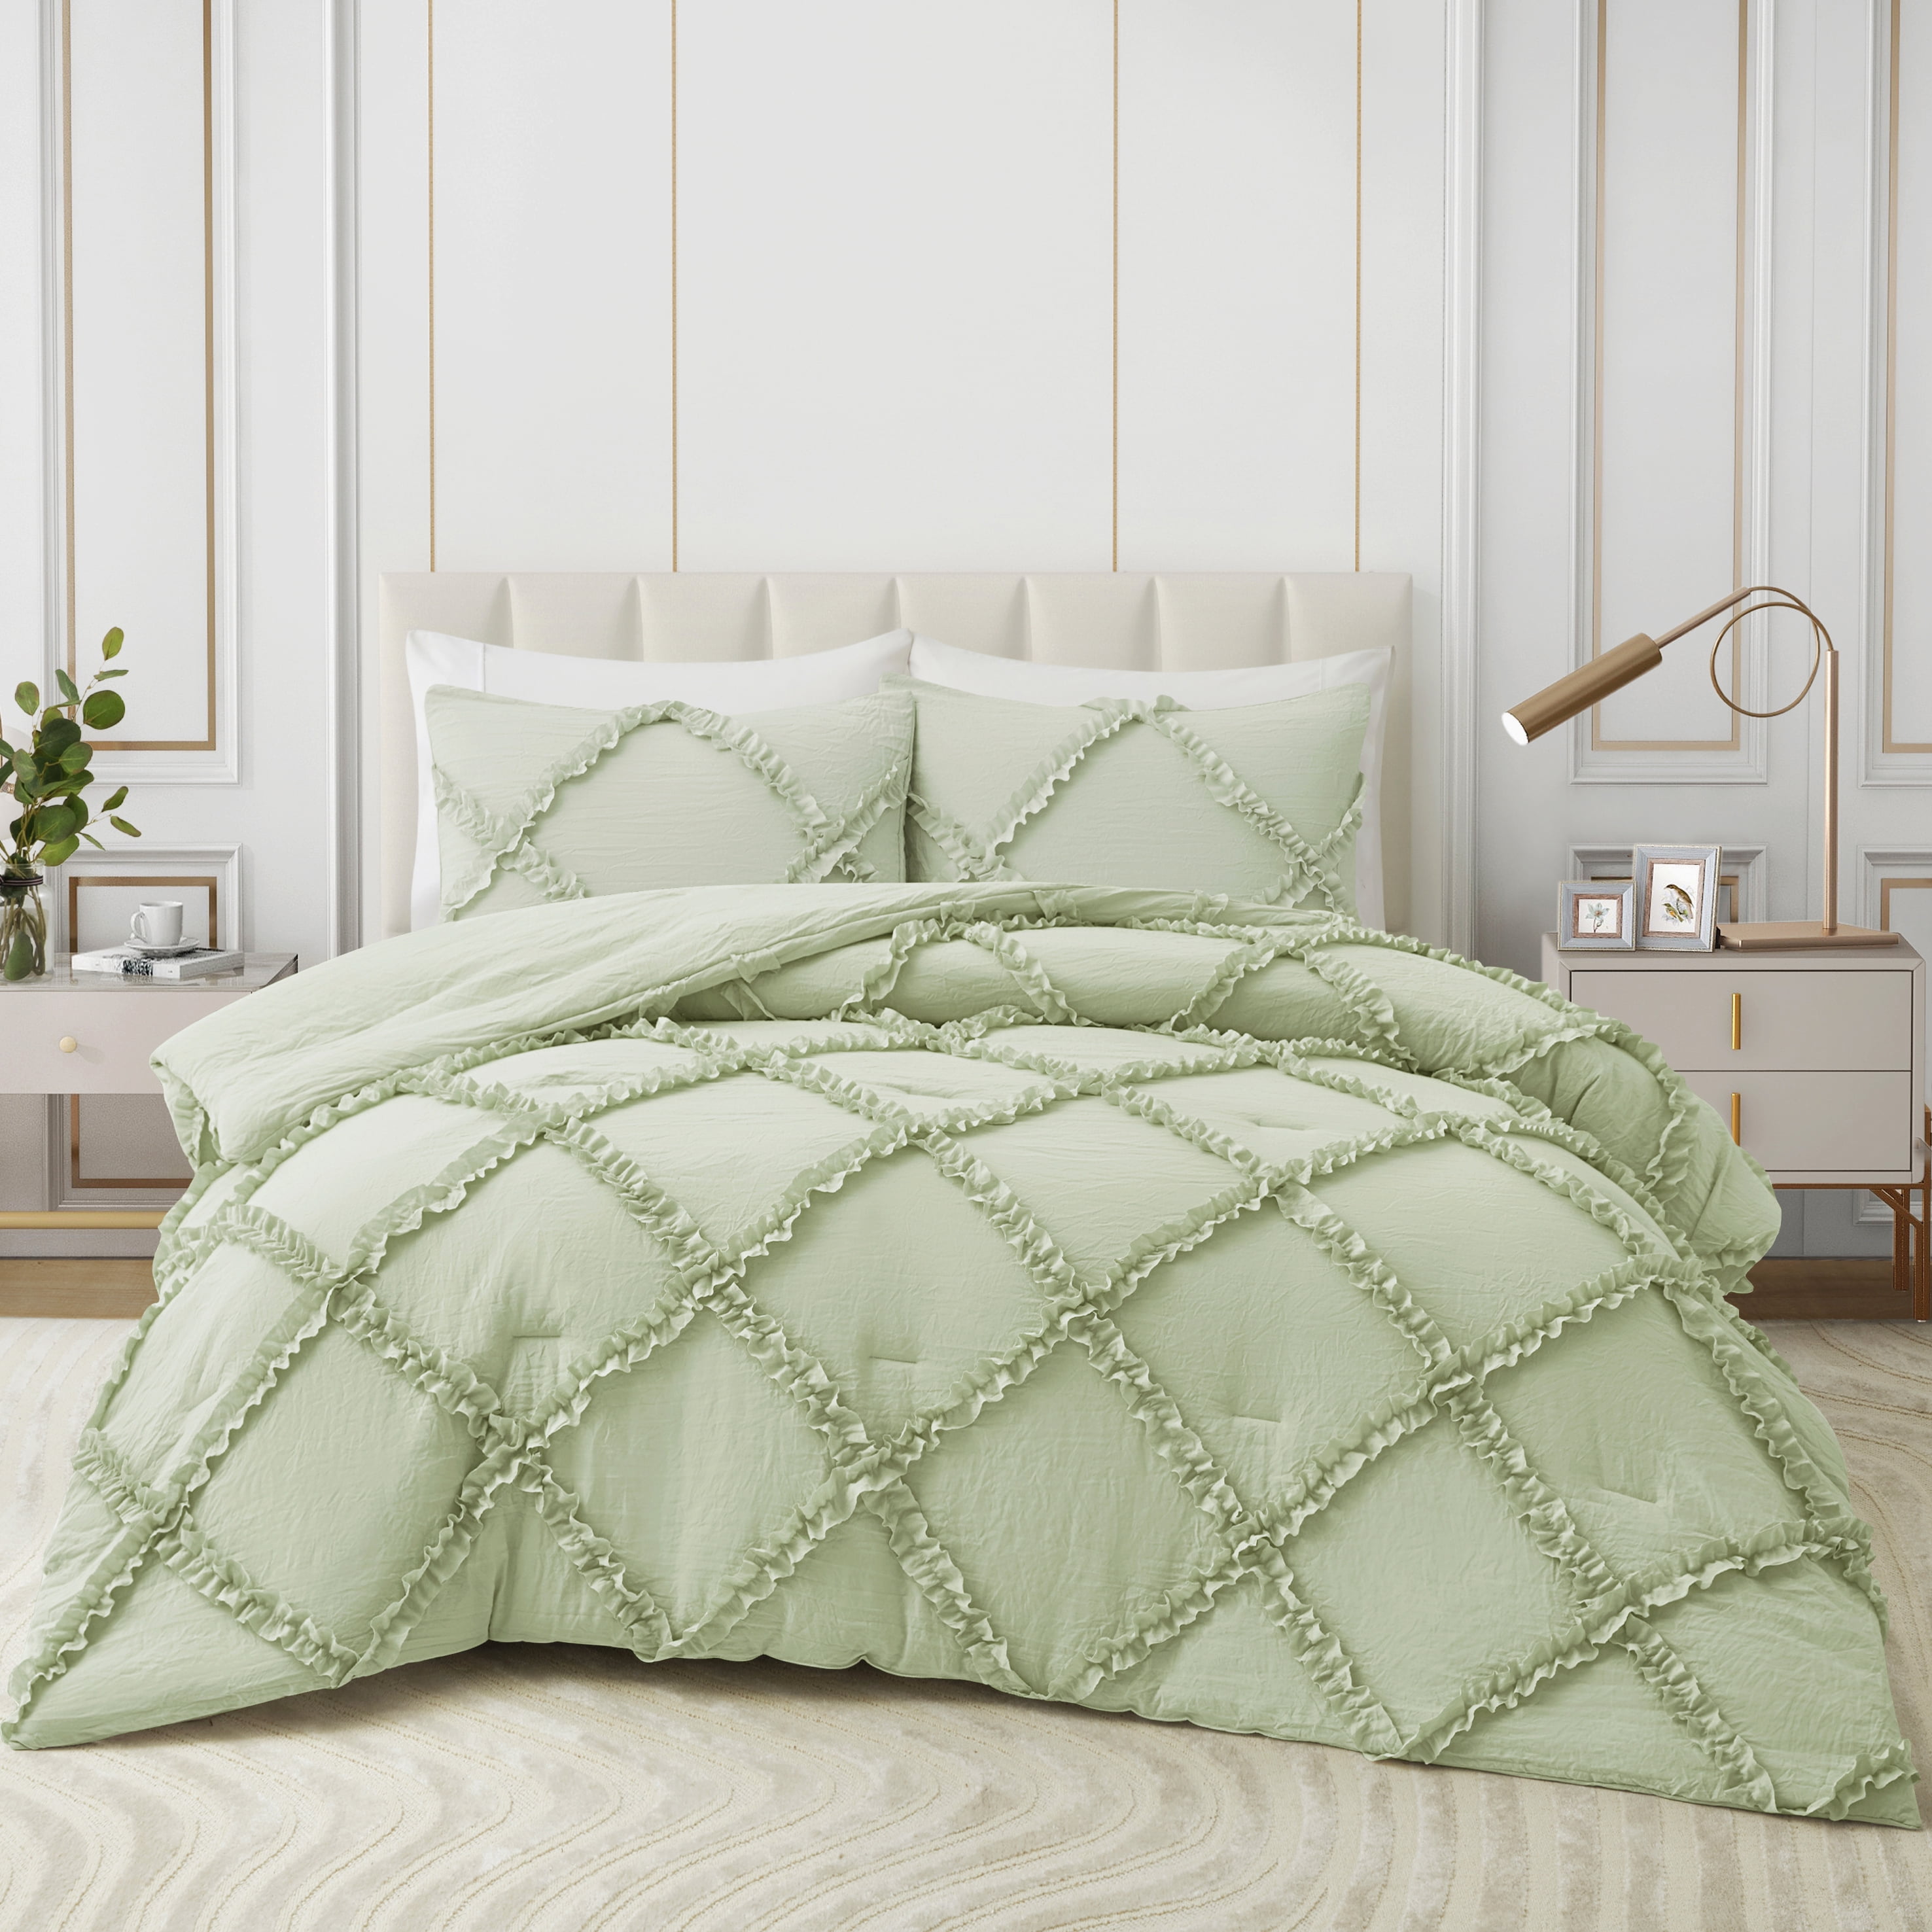 Comforter Set Queen Size Bedding – 3 Piece Farmhouse Bedding Set